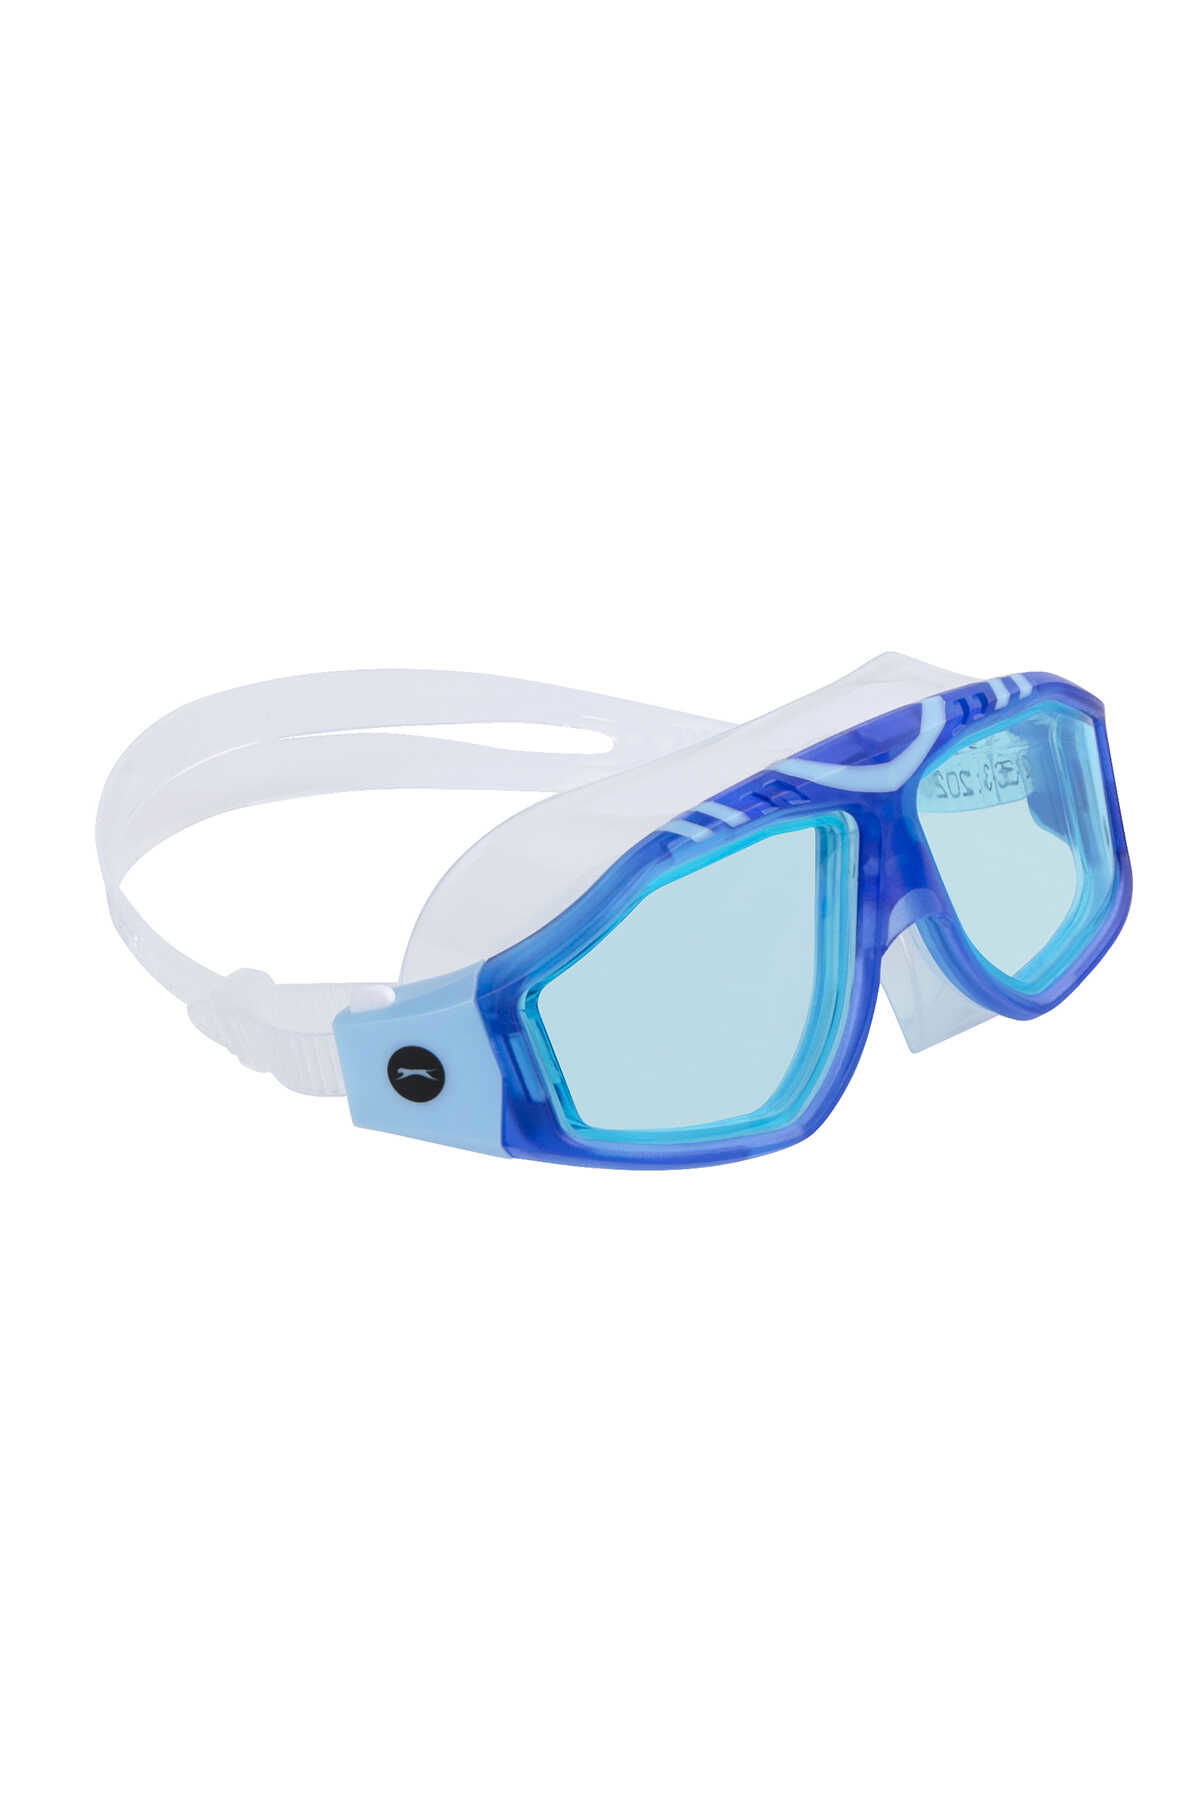 Slazenger - Slazenger GL7 Unisex Çocuk Yüzücü Gözlüğü Mavi